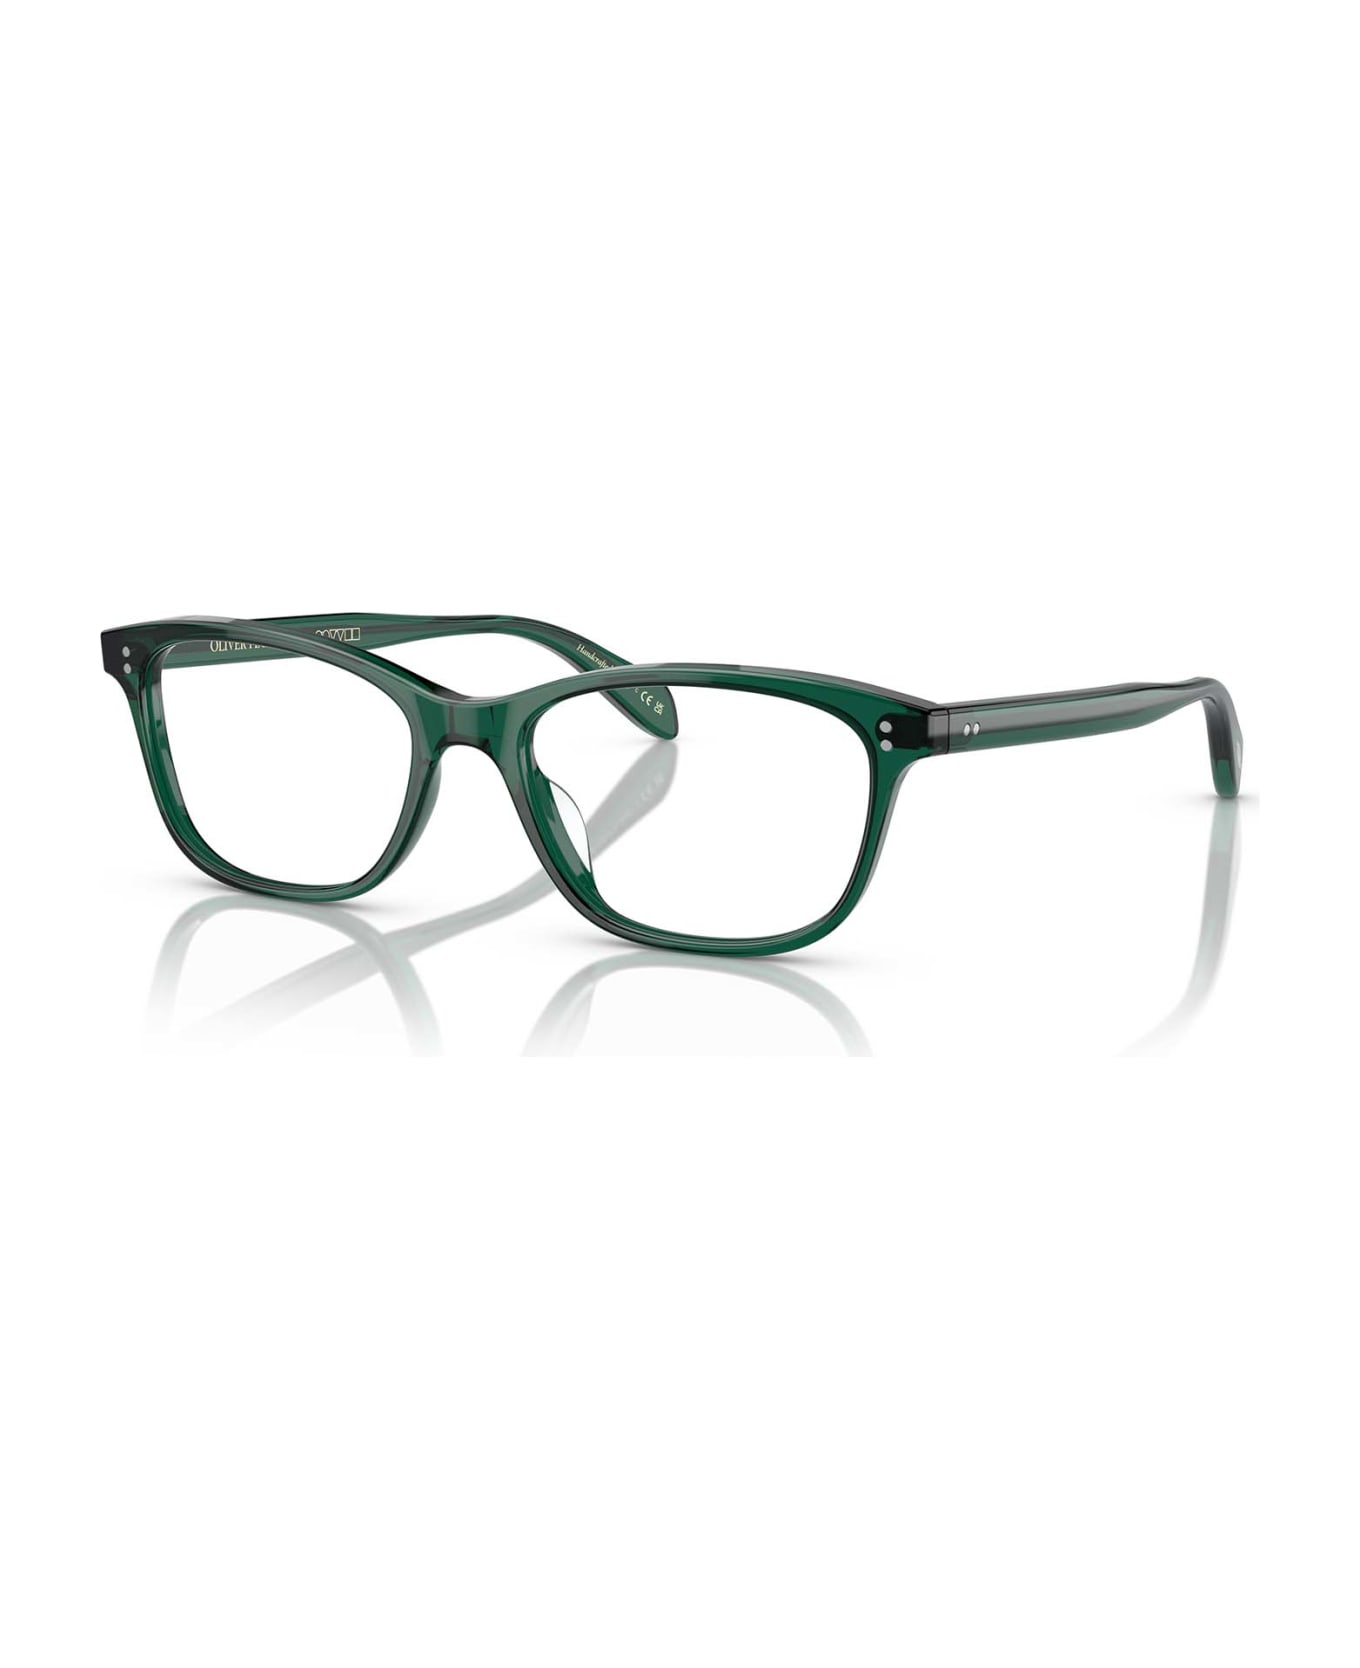 Oliver Peoples Ov5224 Translucent Dark Teal Glasses - Translucent Dark Teal